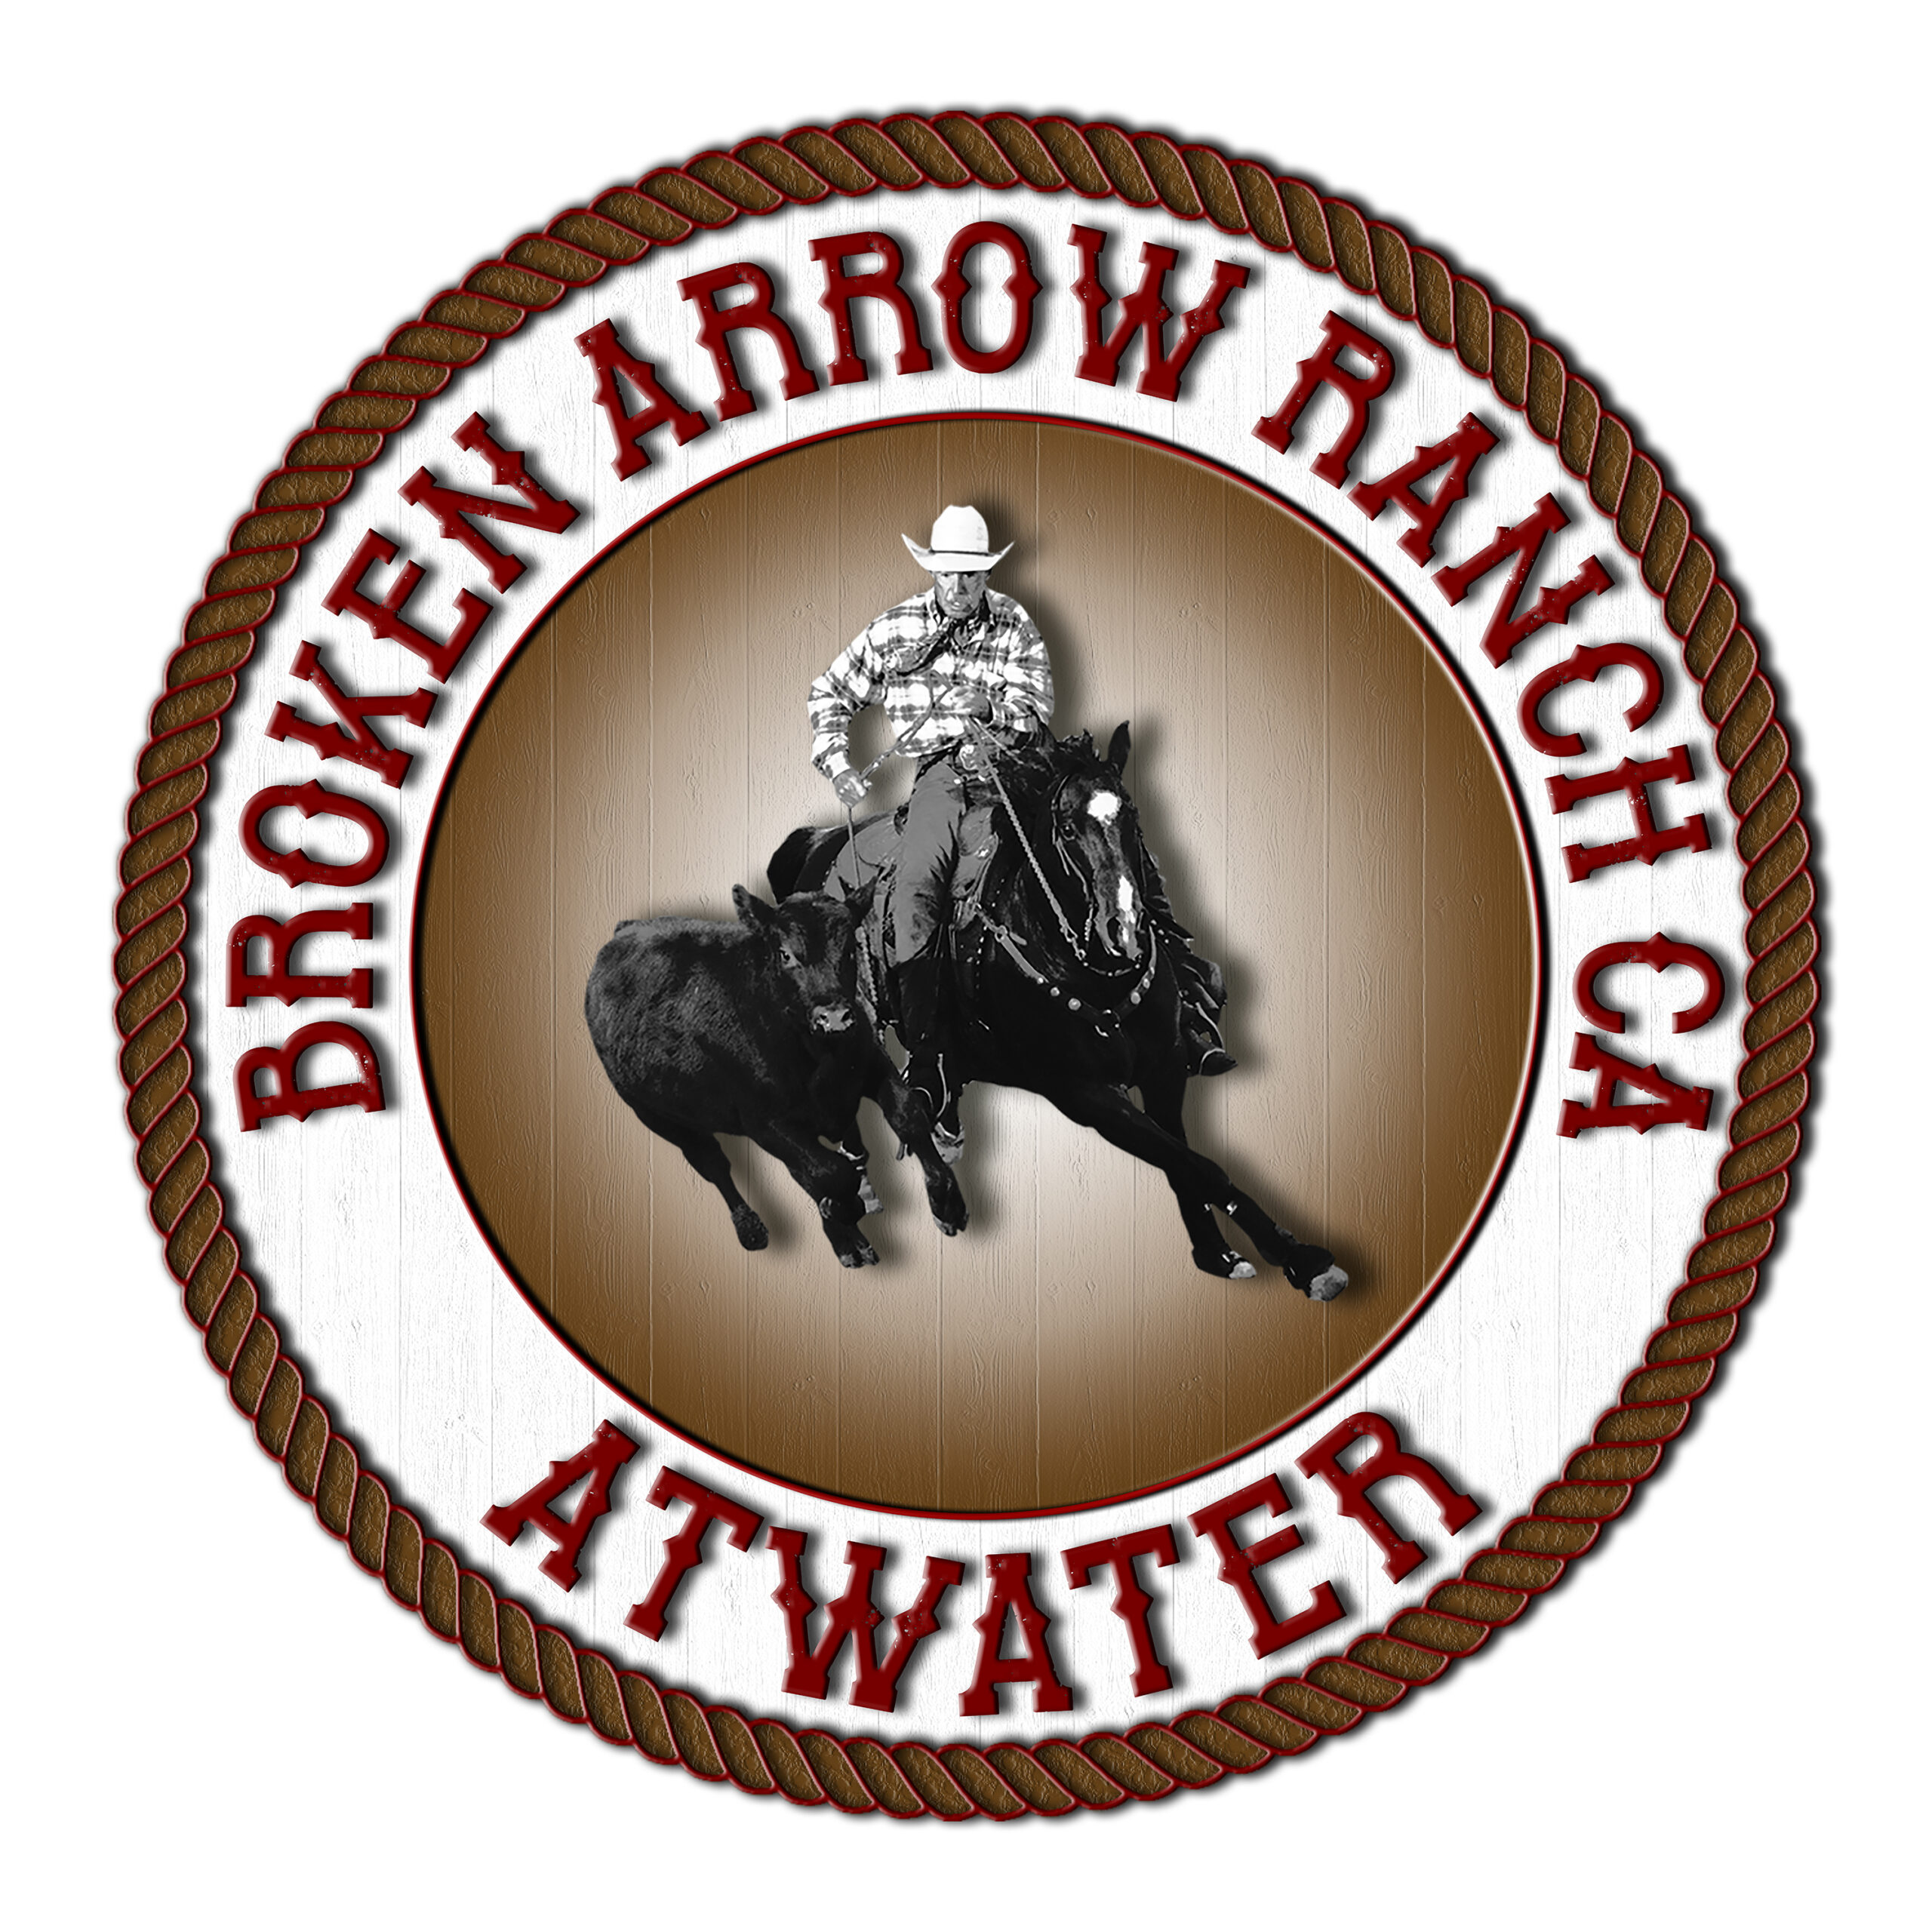 broken arrow ranch, ca